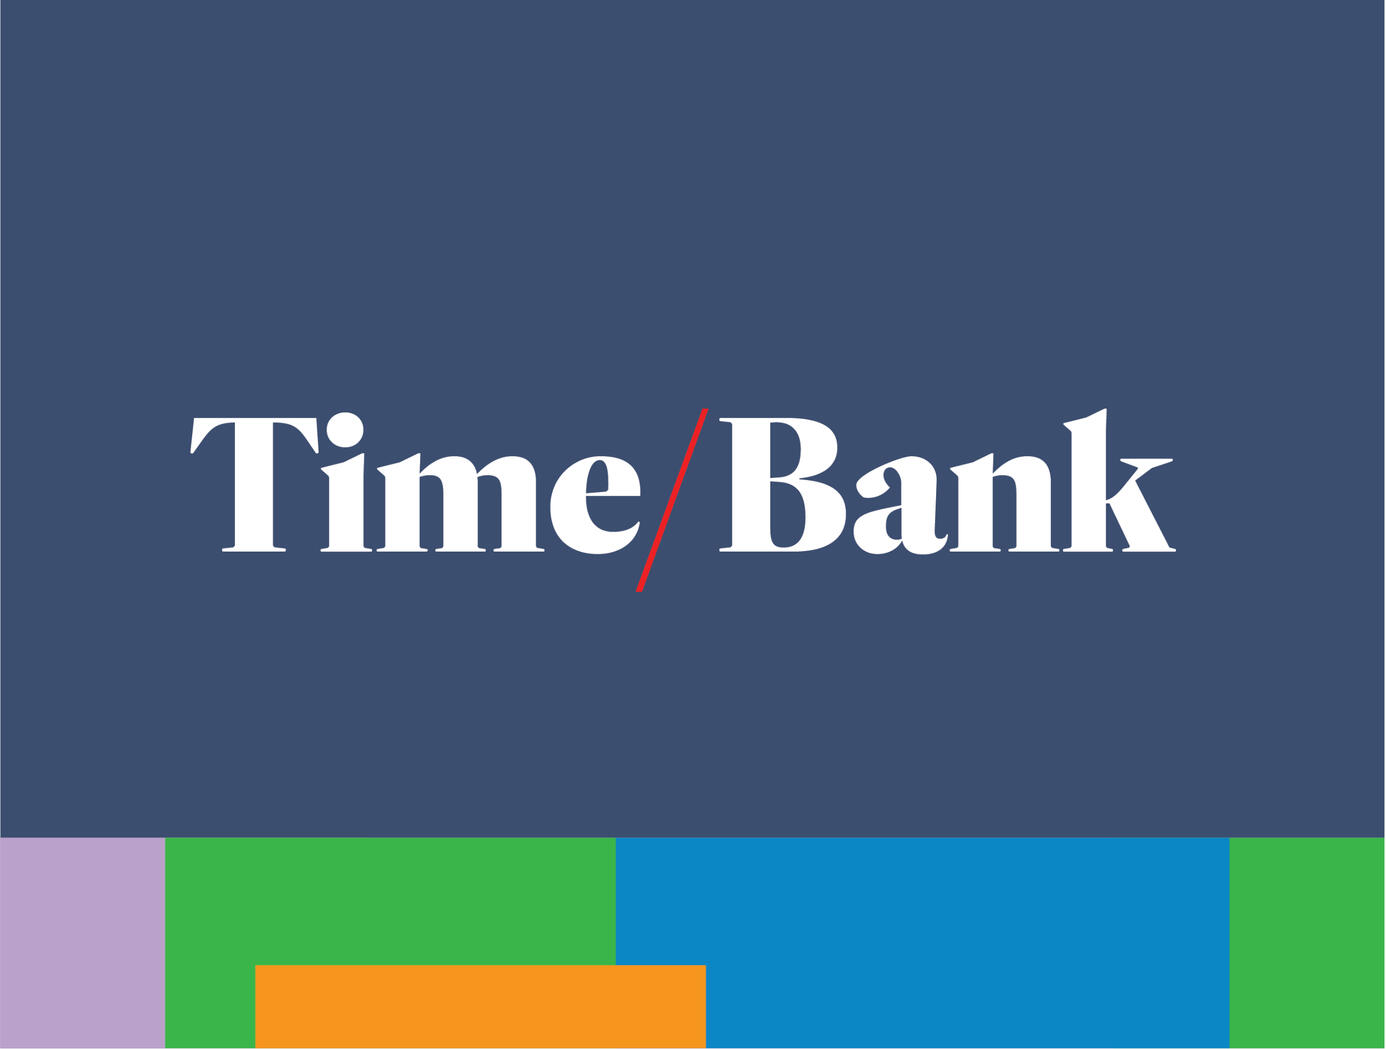 Time/Bank